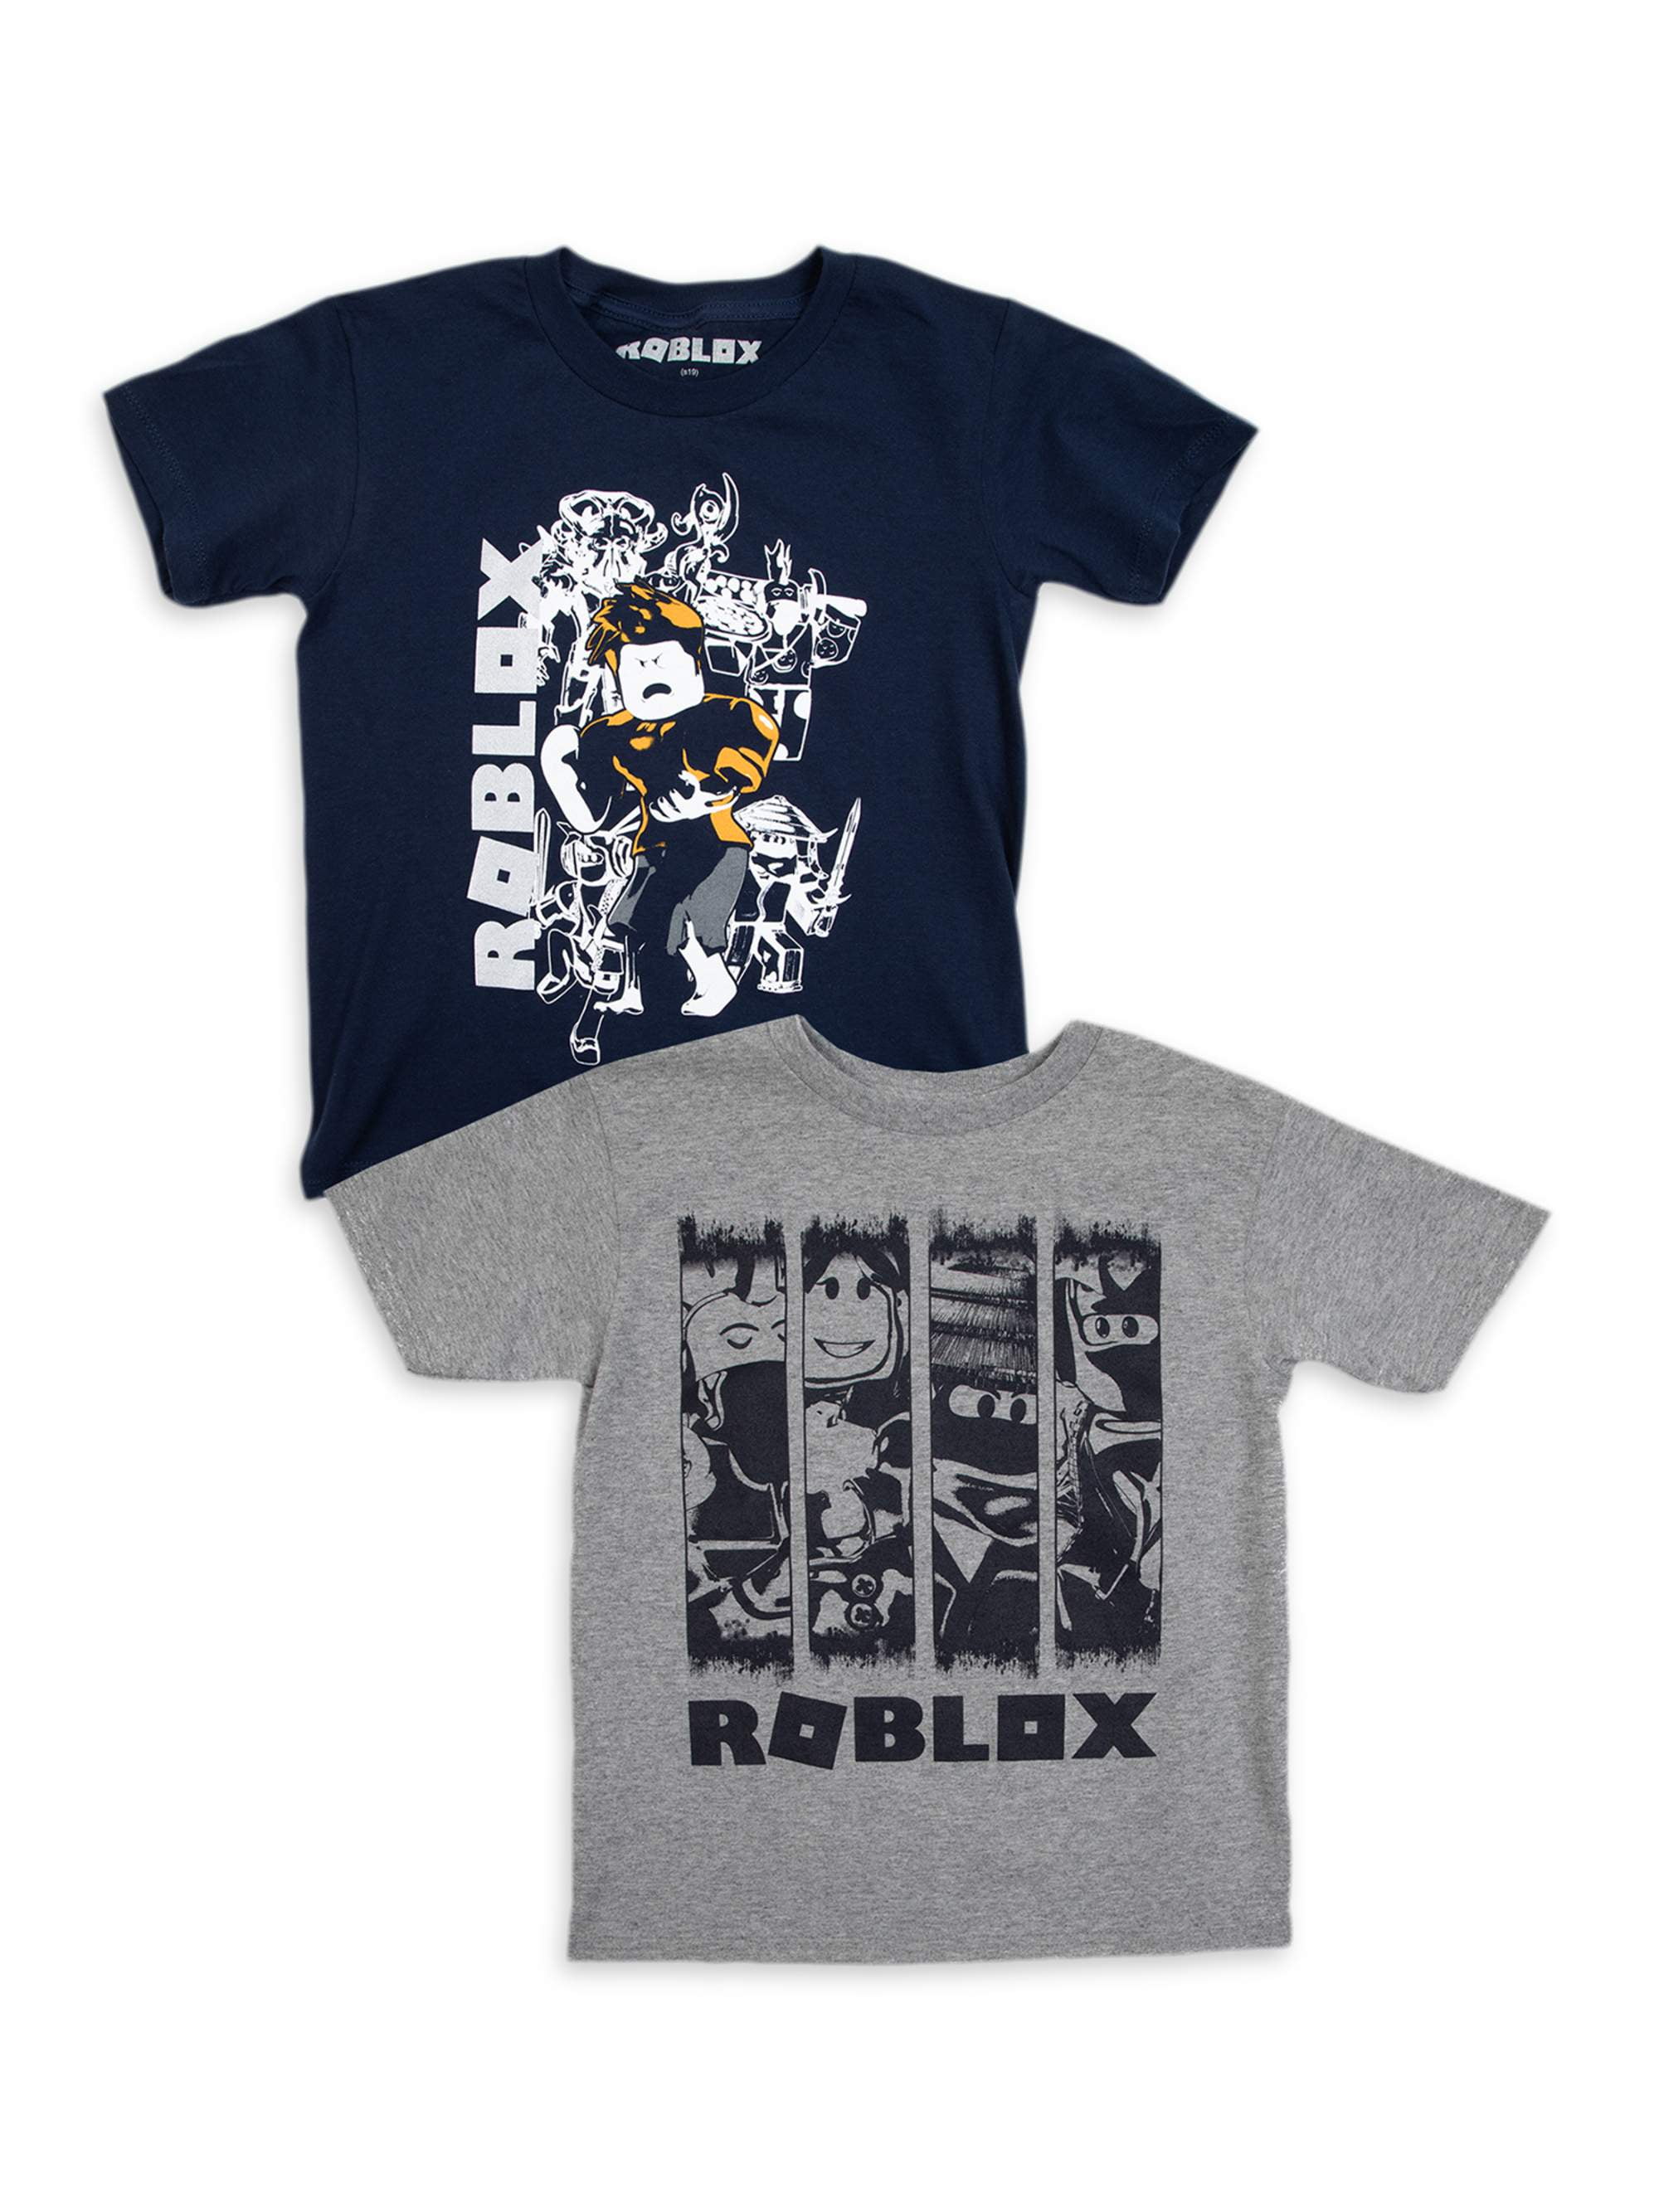 Roblox  Roblox t shirts, T shirt, Shirts